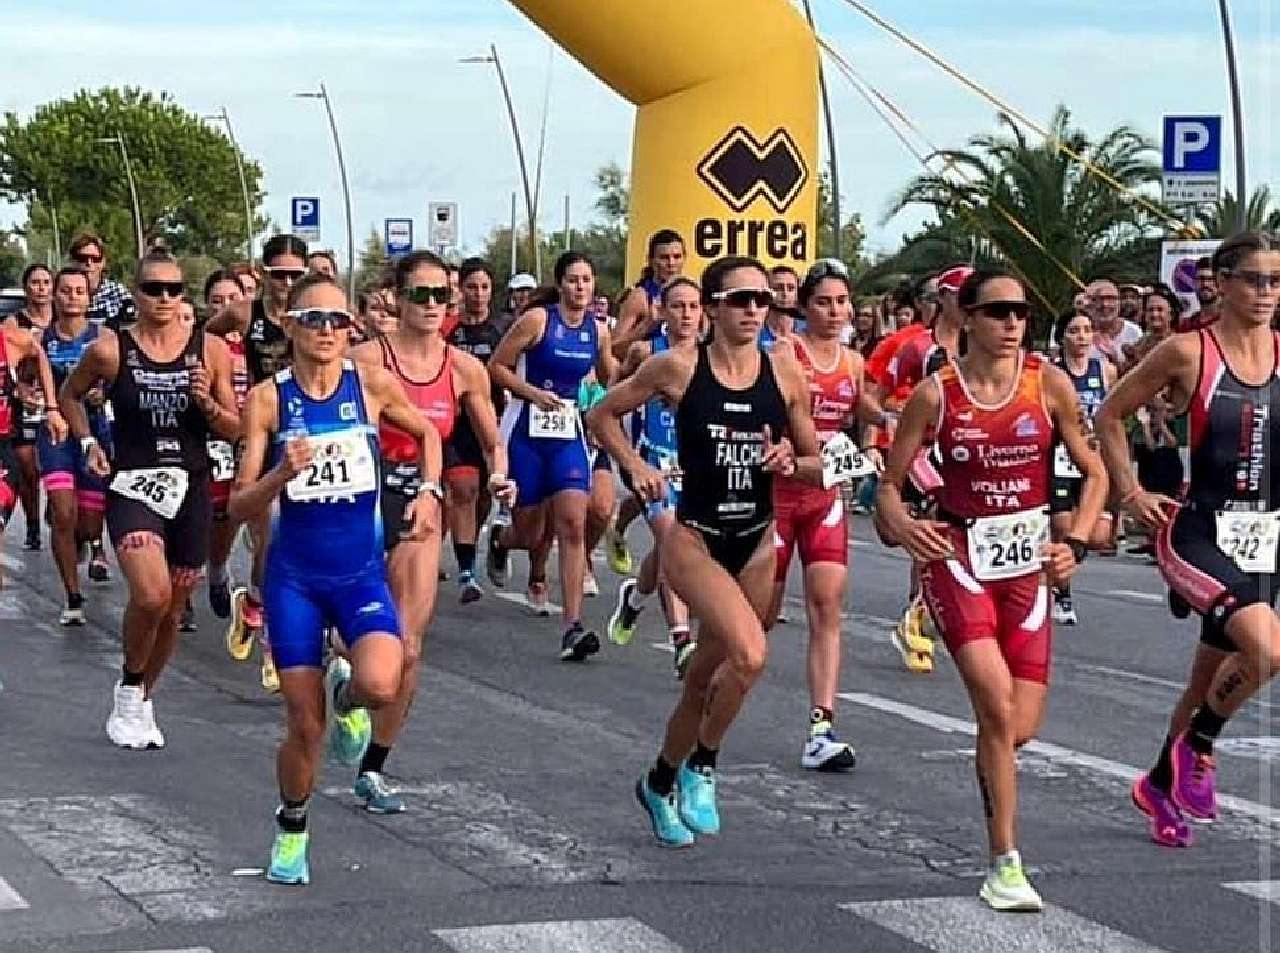 Chiara Ingletto (pettorale 241) vince The Night of Triathlon Costa Riviera Apuana 2022, trasformato in duathlon sprint